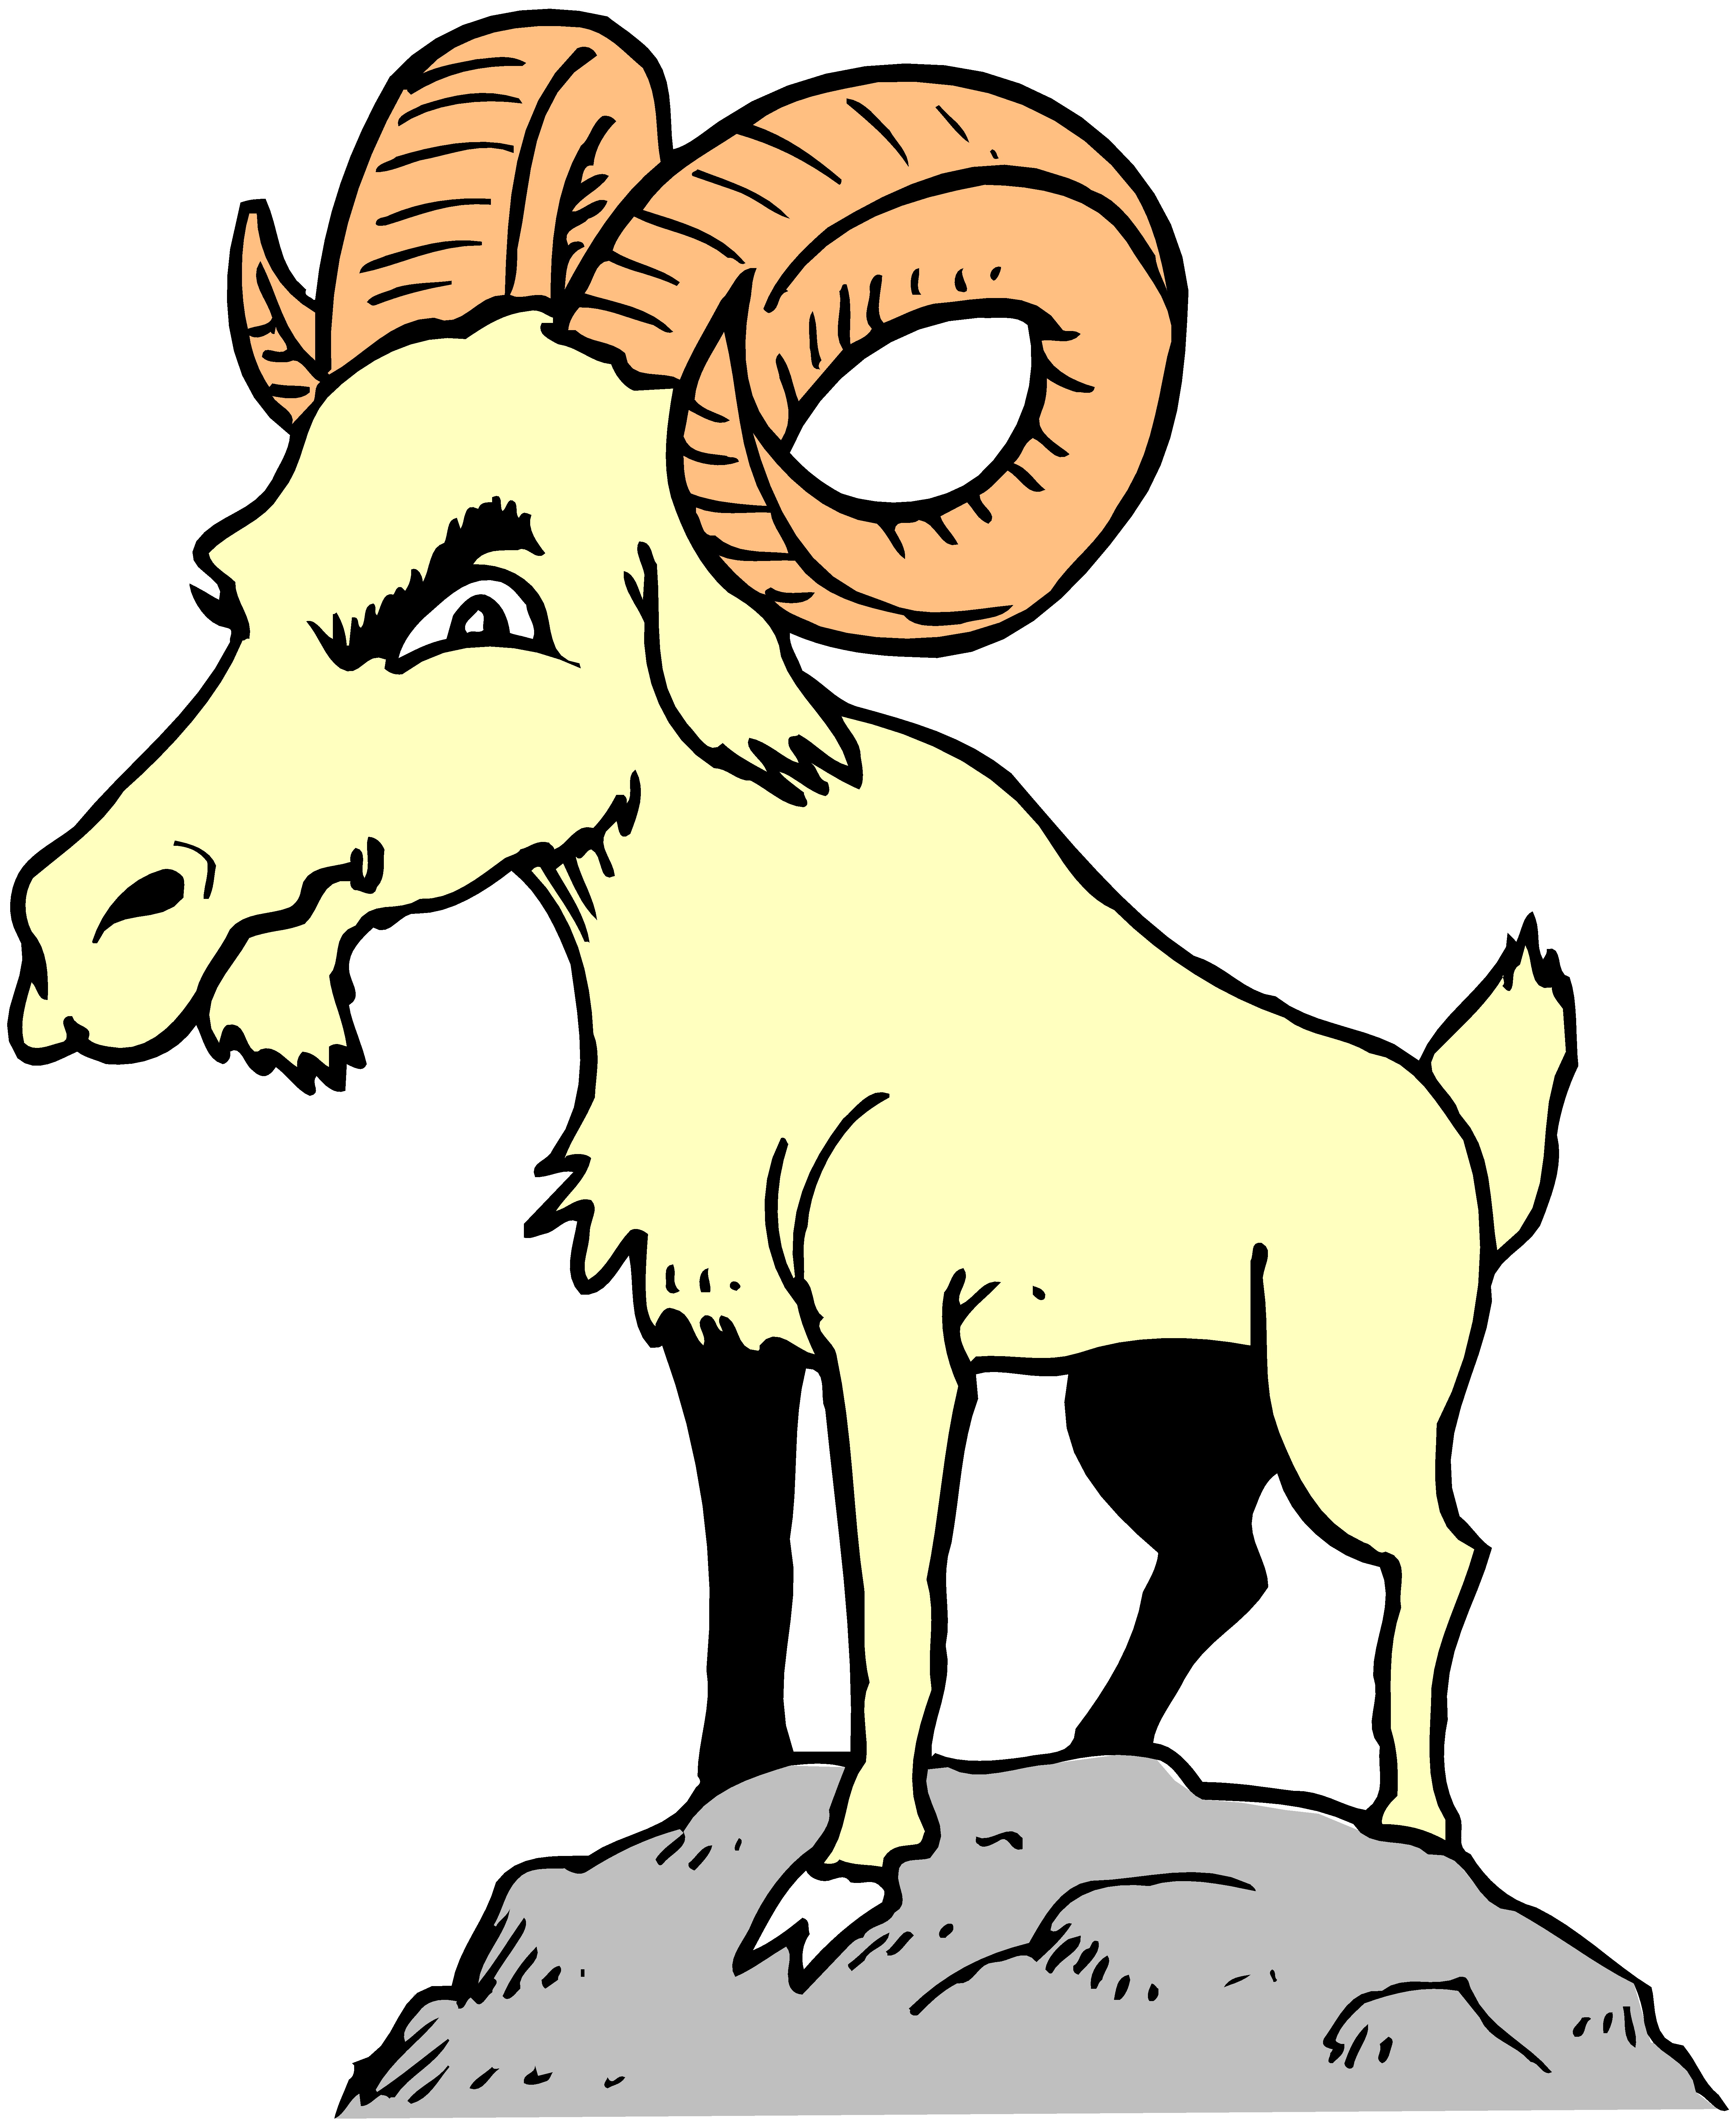 clipart goat big goat